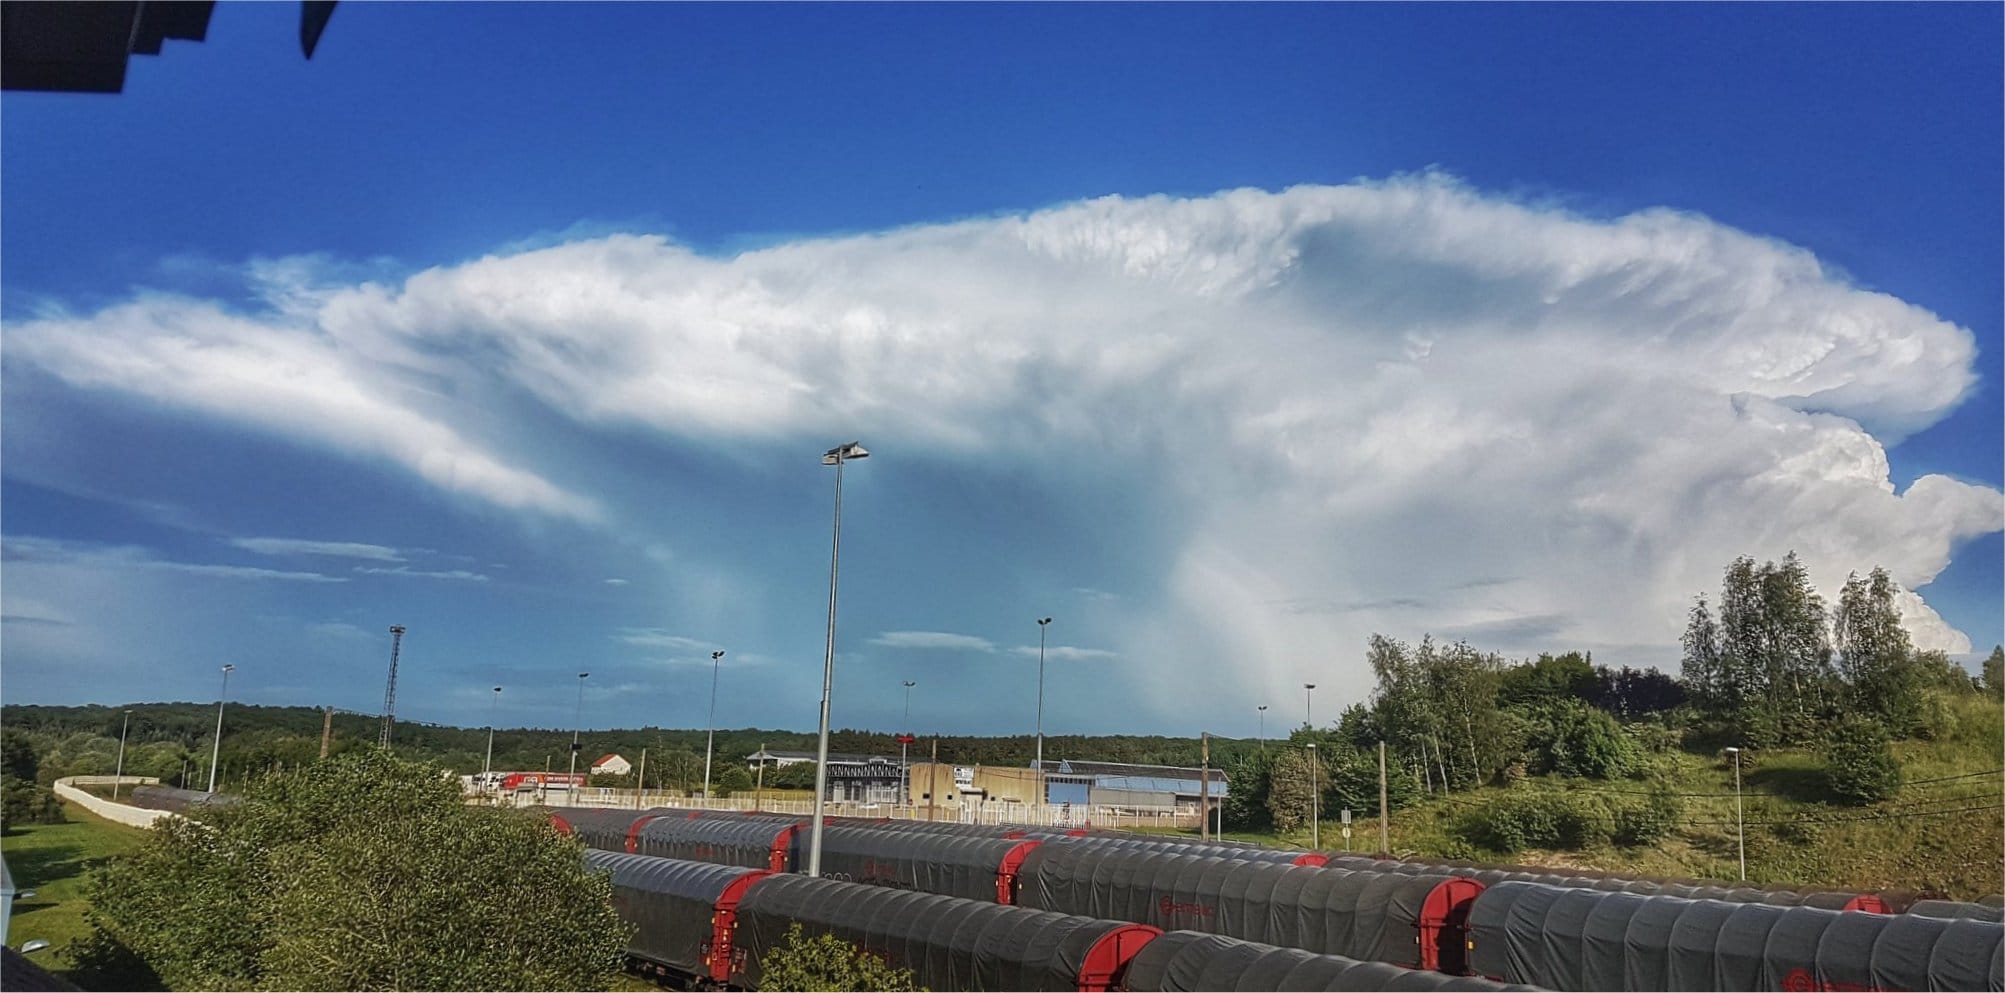 Fort orage dans les Vosges ce soir. Le cumulonimbus est particulièrement virulent comme en témoigne ce cliché - 27/05/2018 19:30 - Caesar Julius